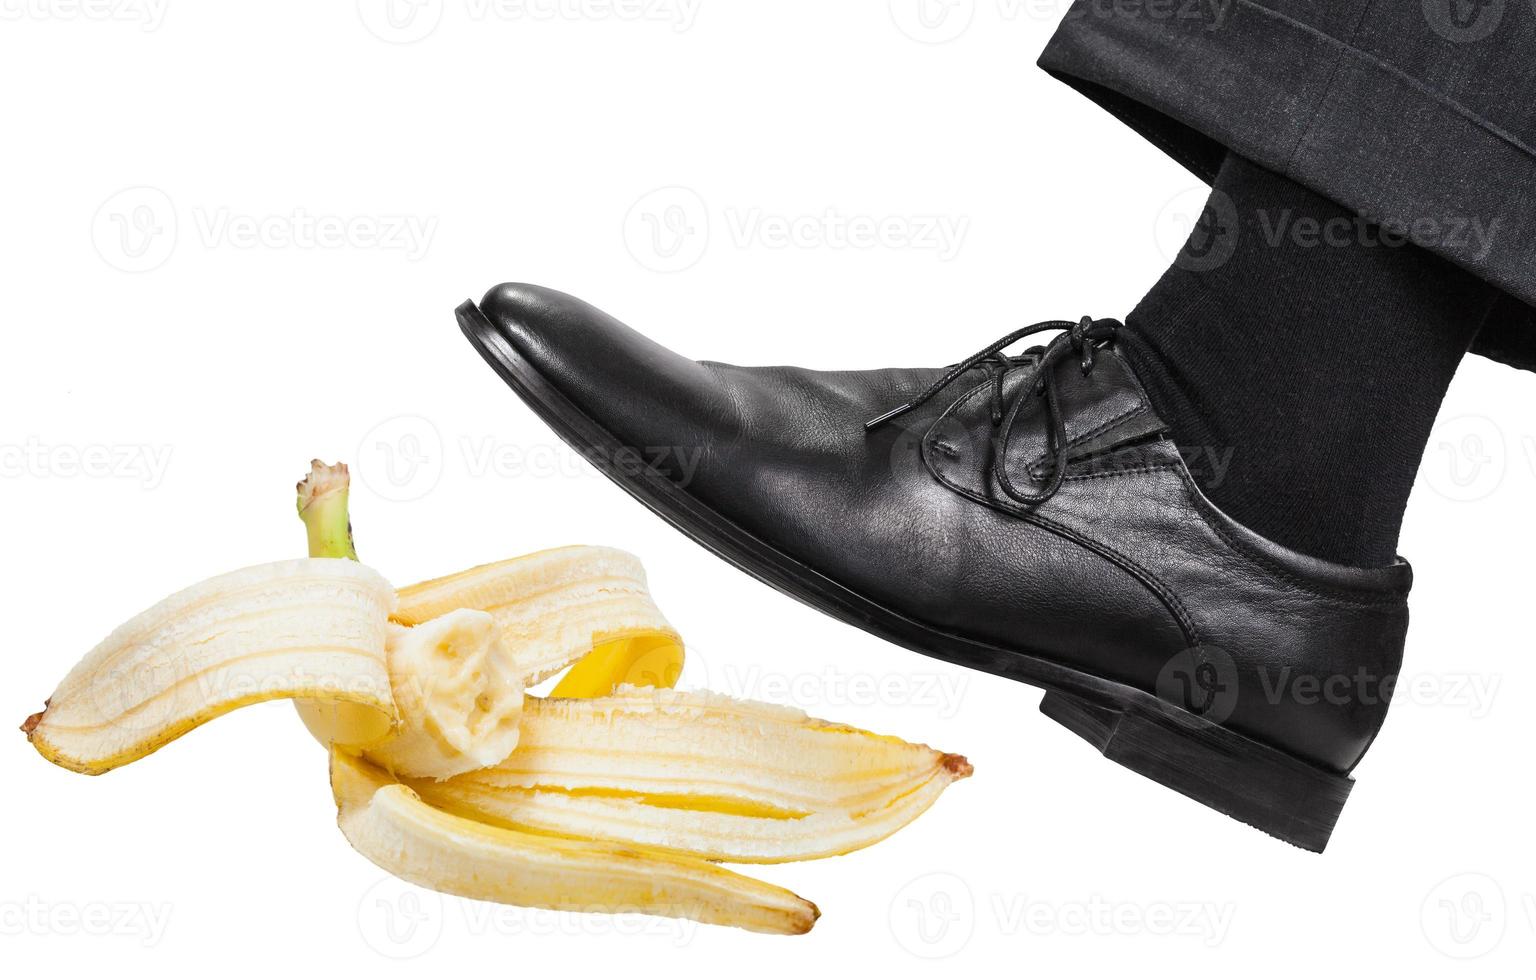 leg in the left black shoe slips on a banana peel 11440583 Stock Photo ...